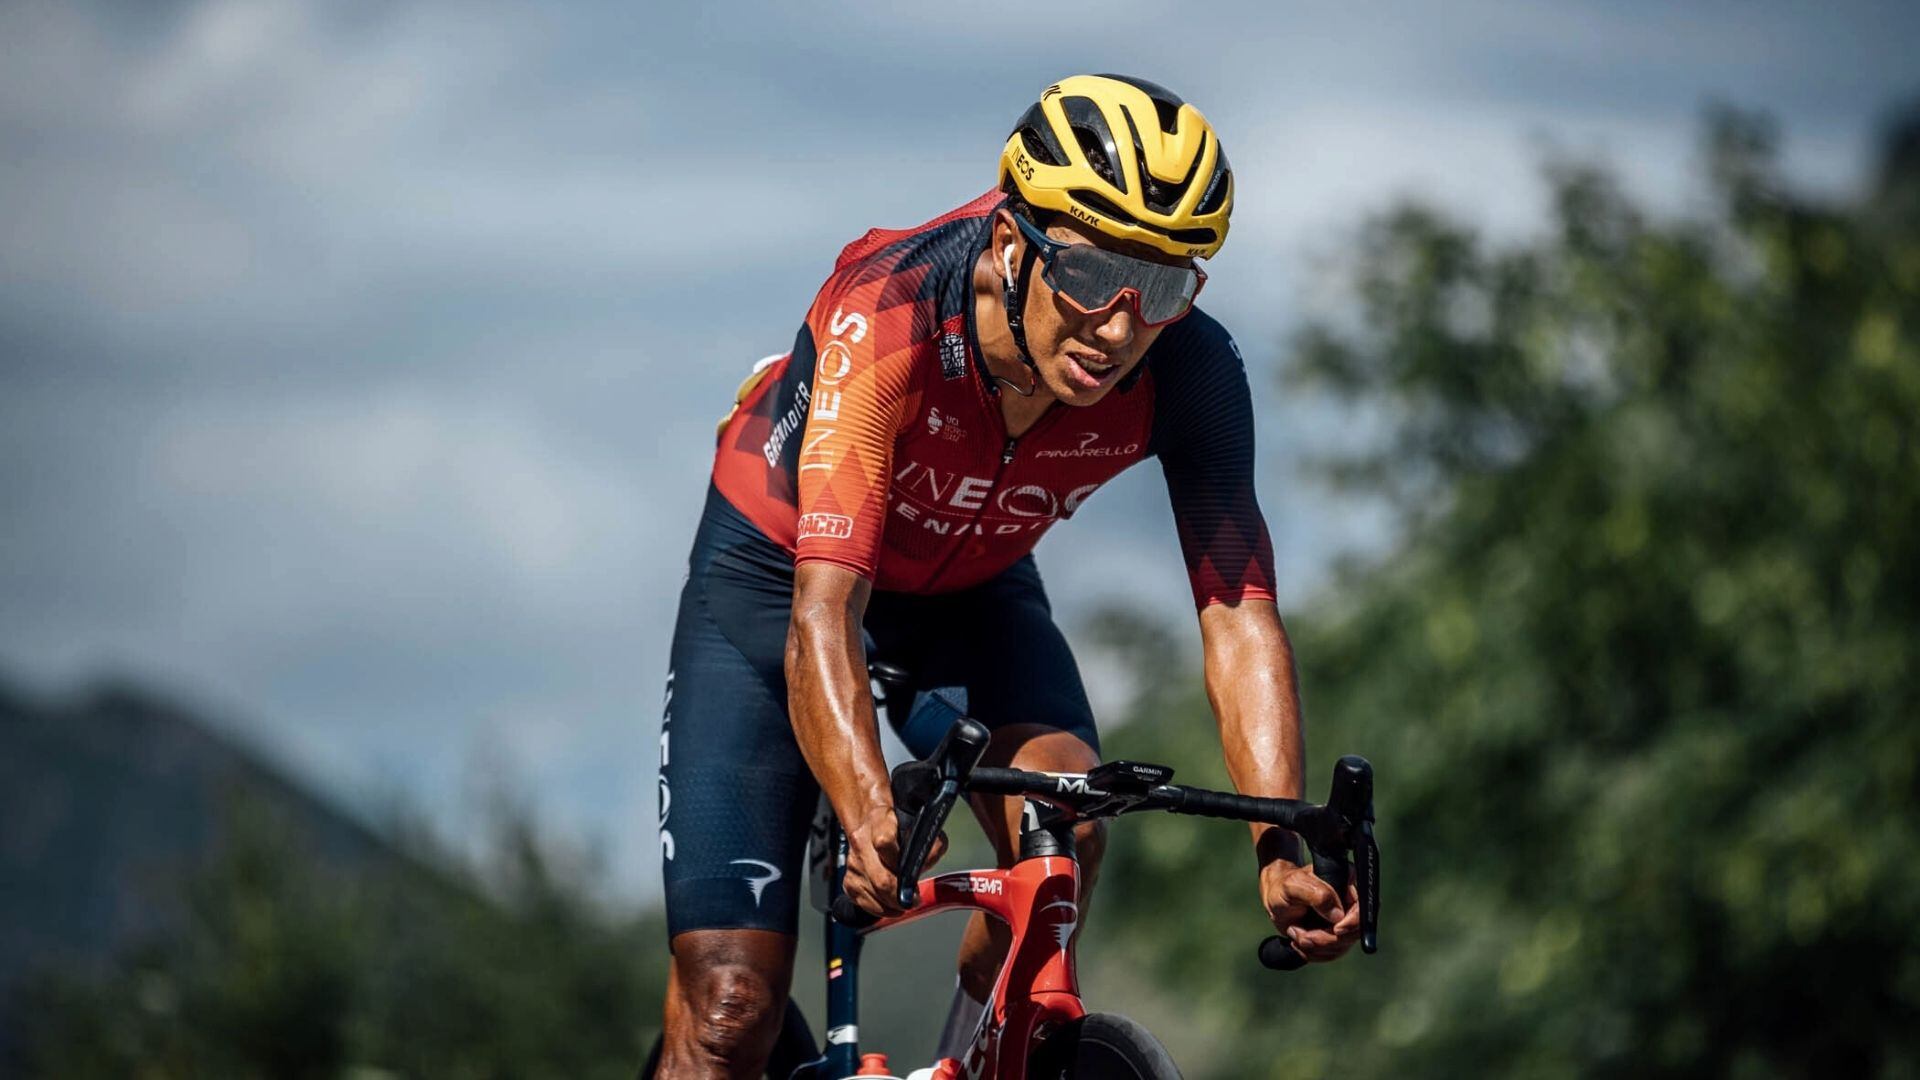 El corredor colombiano sufrió una caída en la etapa 15 del Tour de Francia. Foto: @INEOSGrenadiers